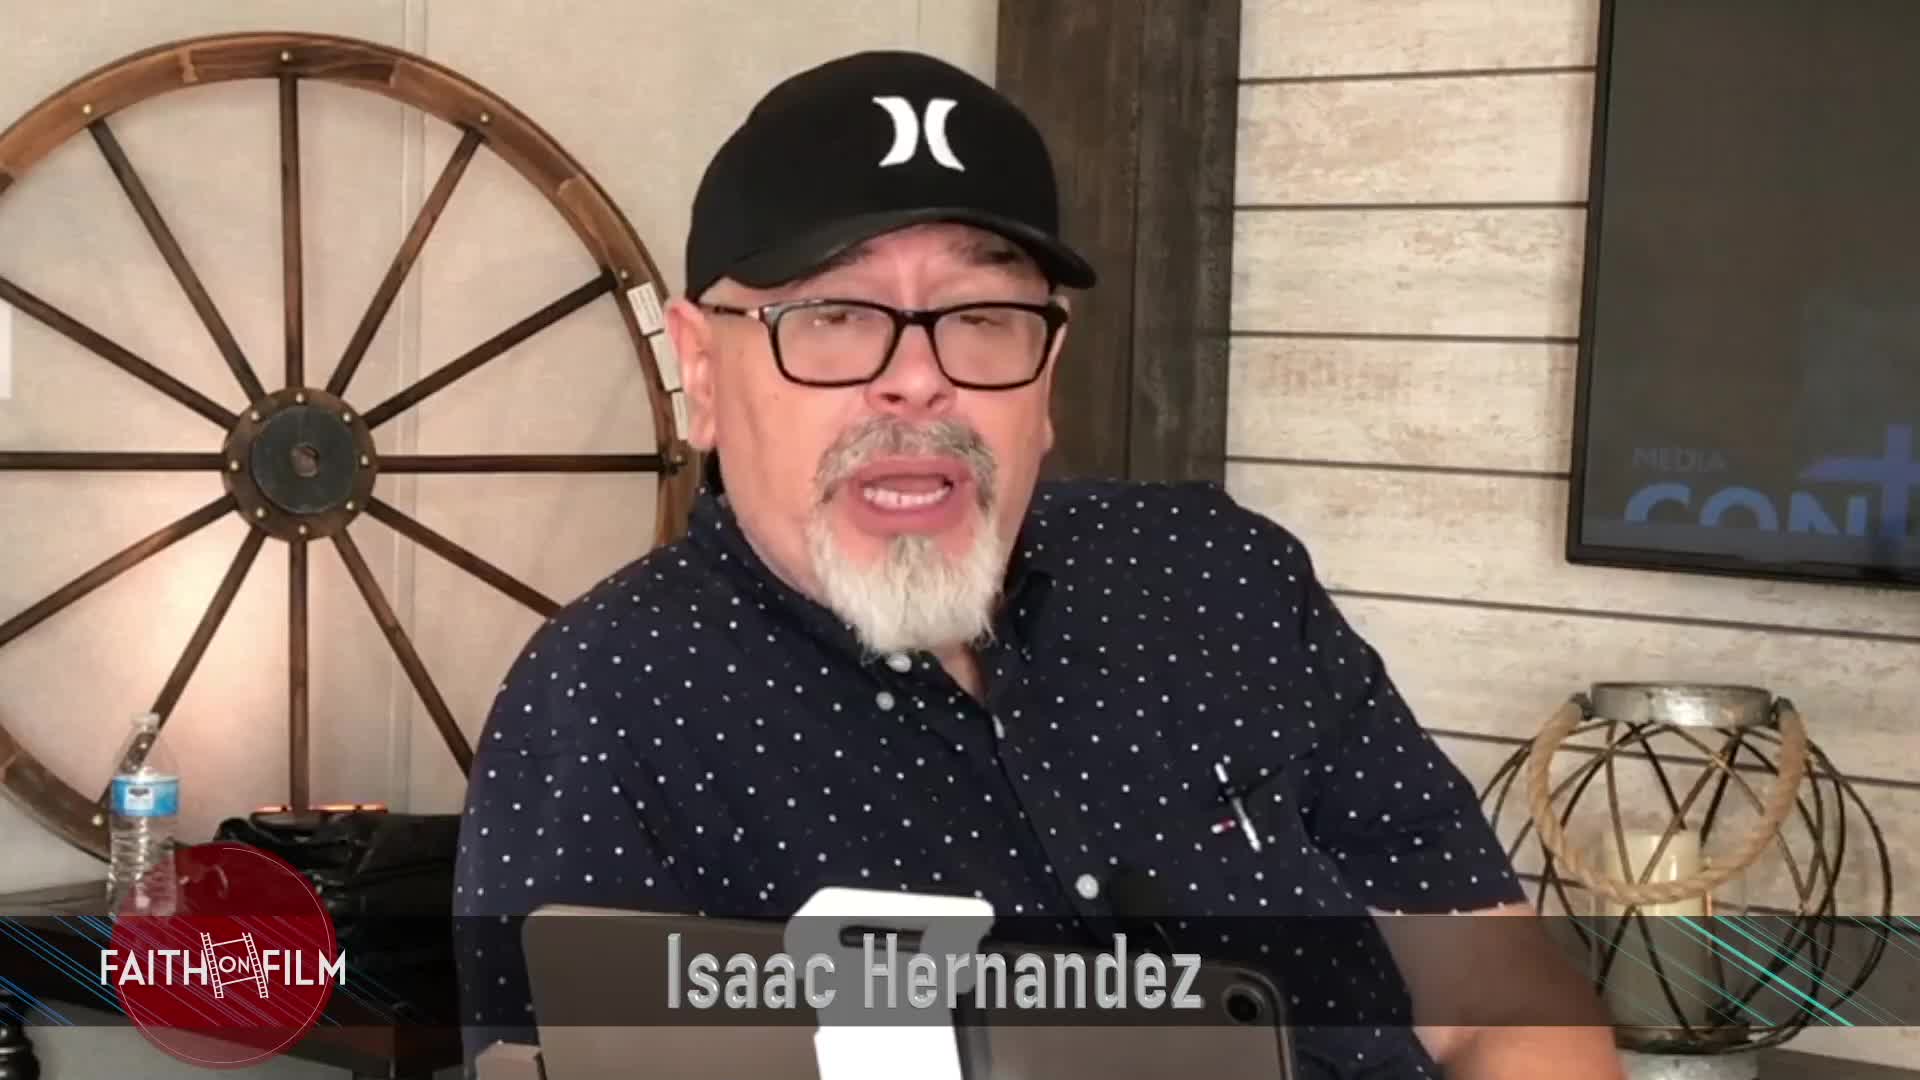 Isaac Hernandez - Faith On Film 108 with Garry Nation